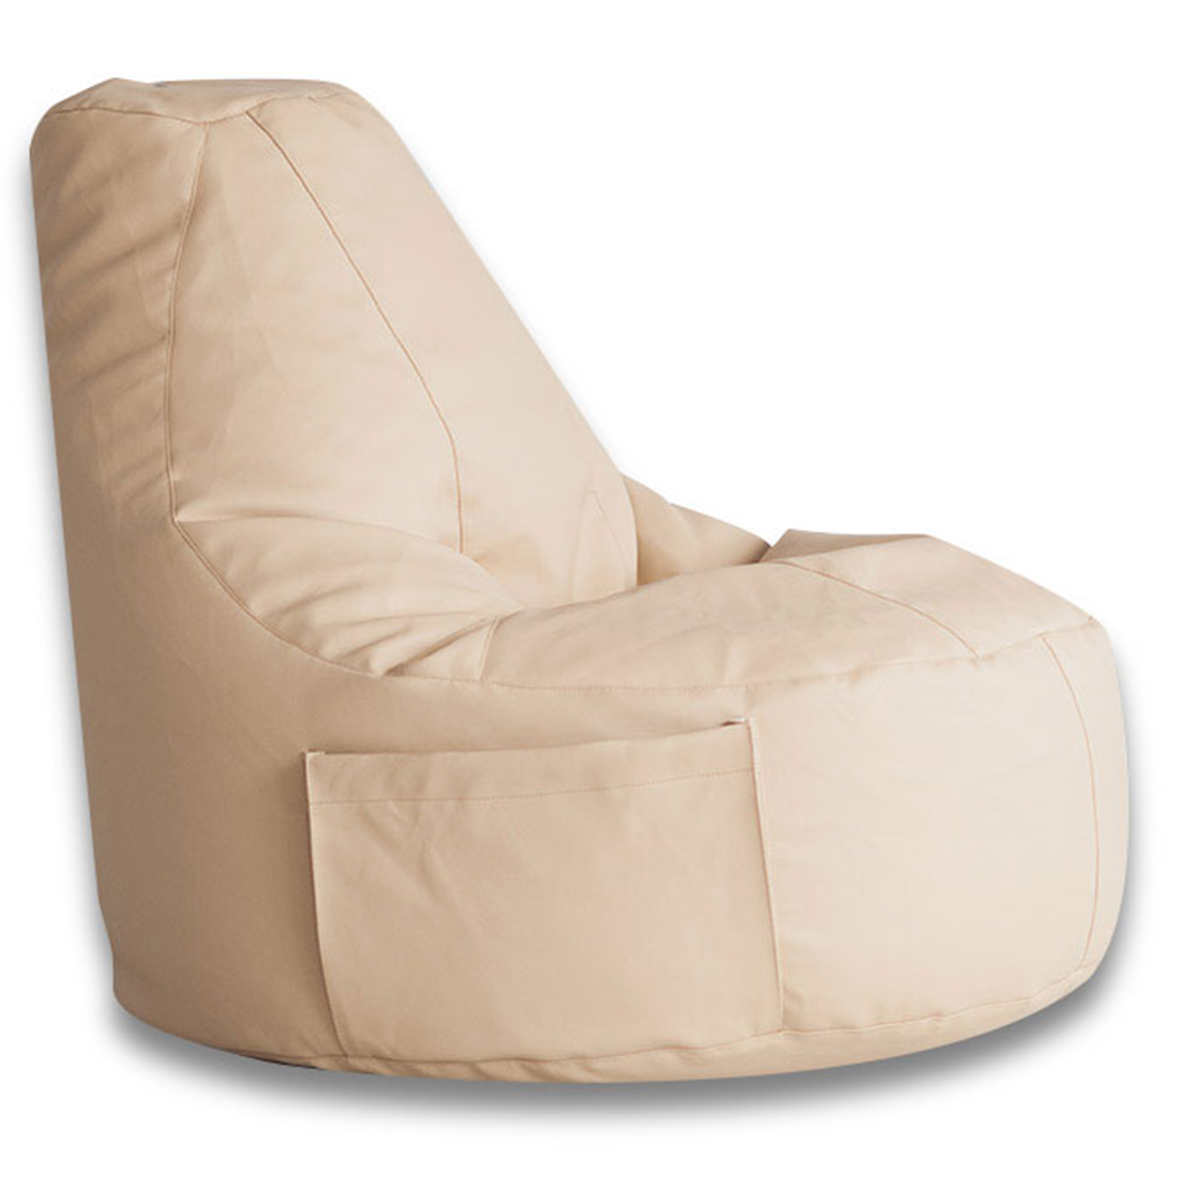 Кресло-мешок DreamBag Конфетти